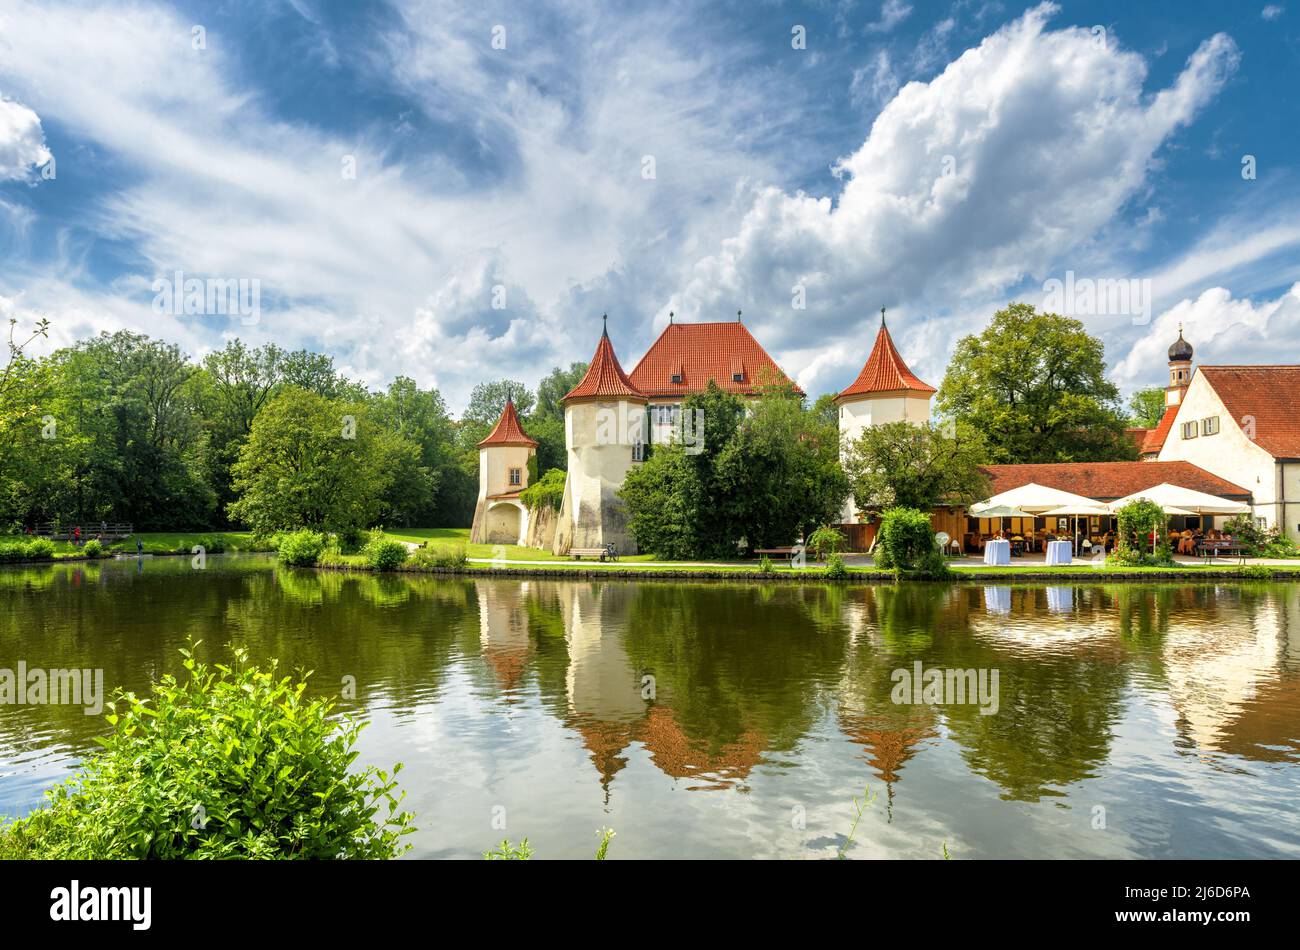 Château de Blutenburg à Munich, Allemagne, Europe. C'est un point de repère de la ville de Munchen. Paysage de maisons médiévales en été, paysage avec hôtel dans la vieille mansio Banque D'Images